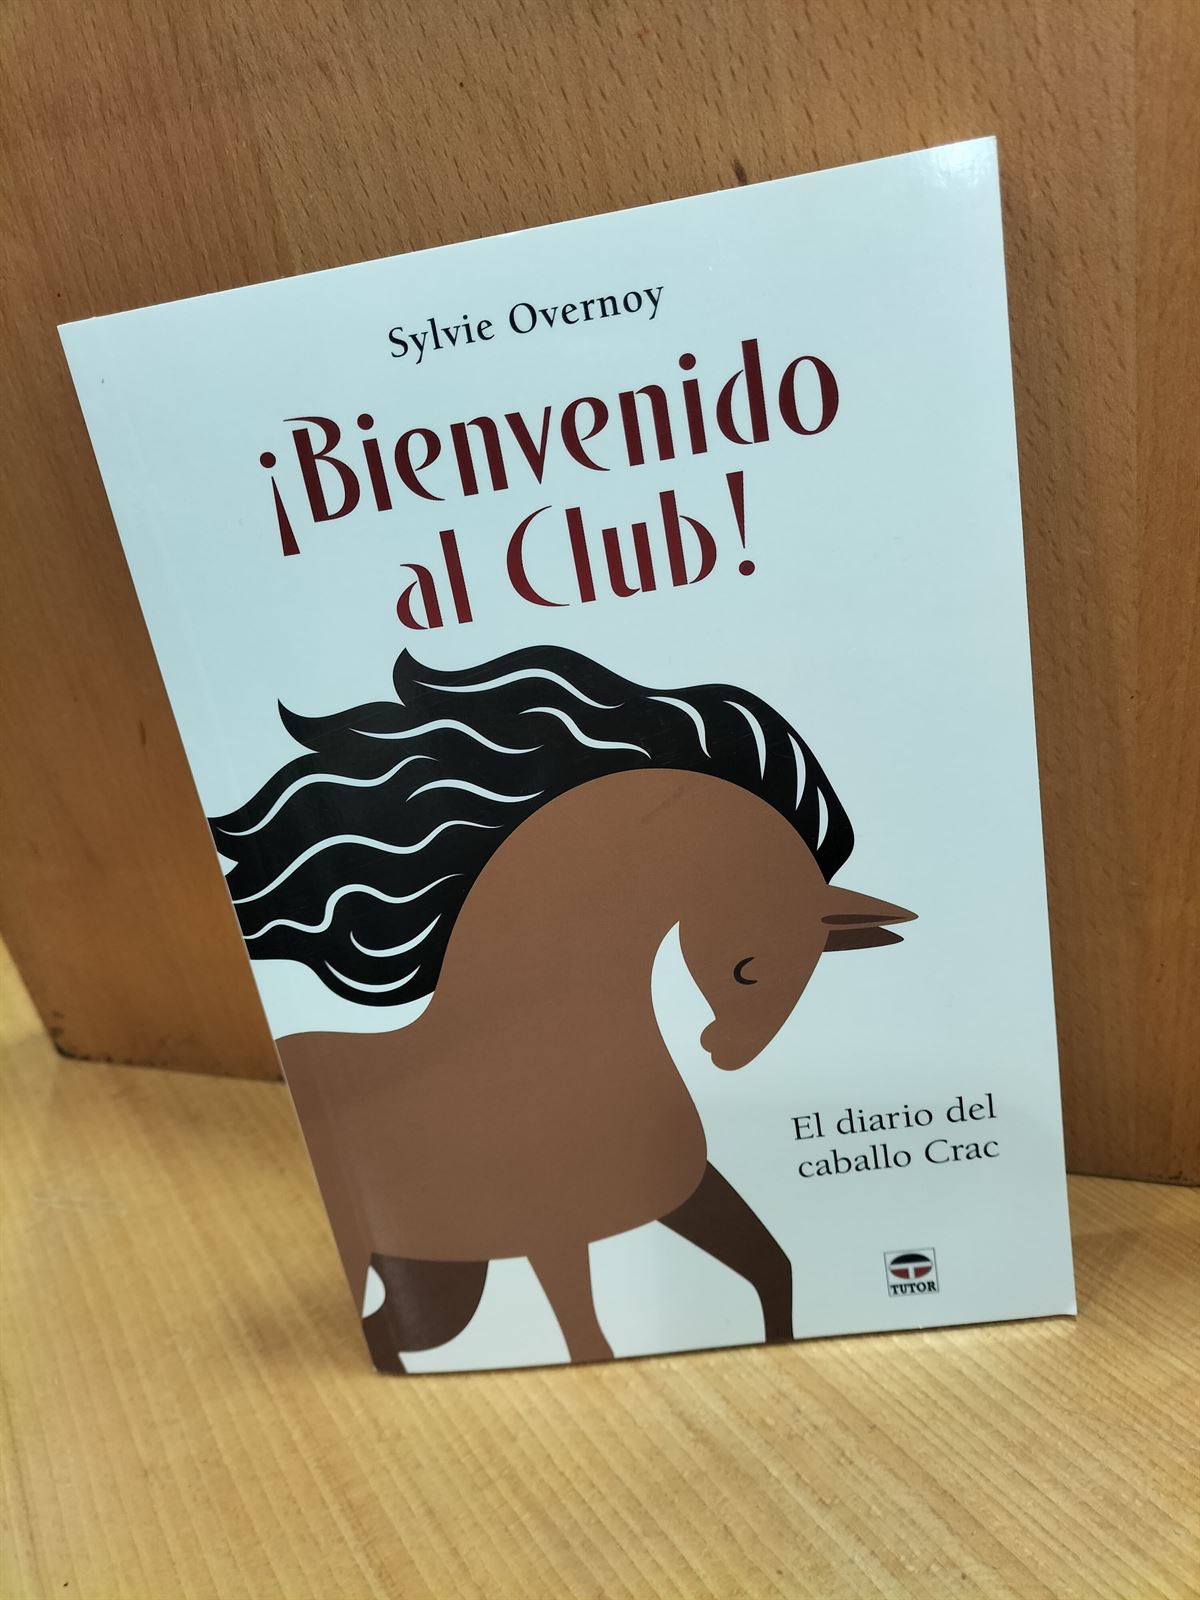 LIBRO: Bienvenido al club! El diario del caballo Crac. - Imagen 1